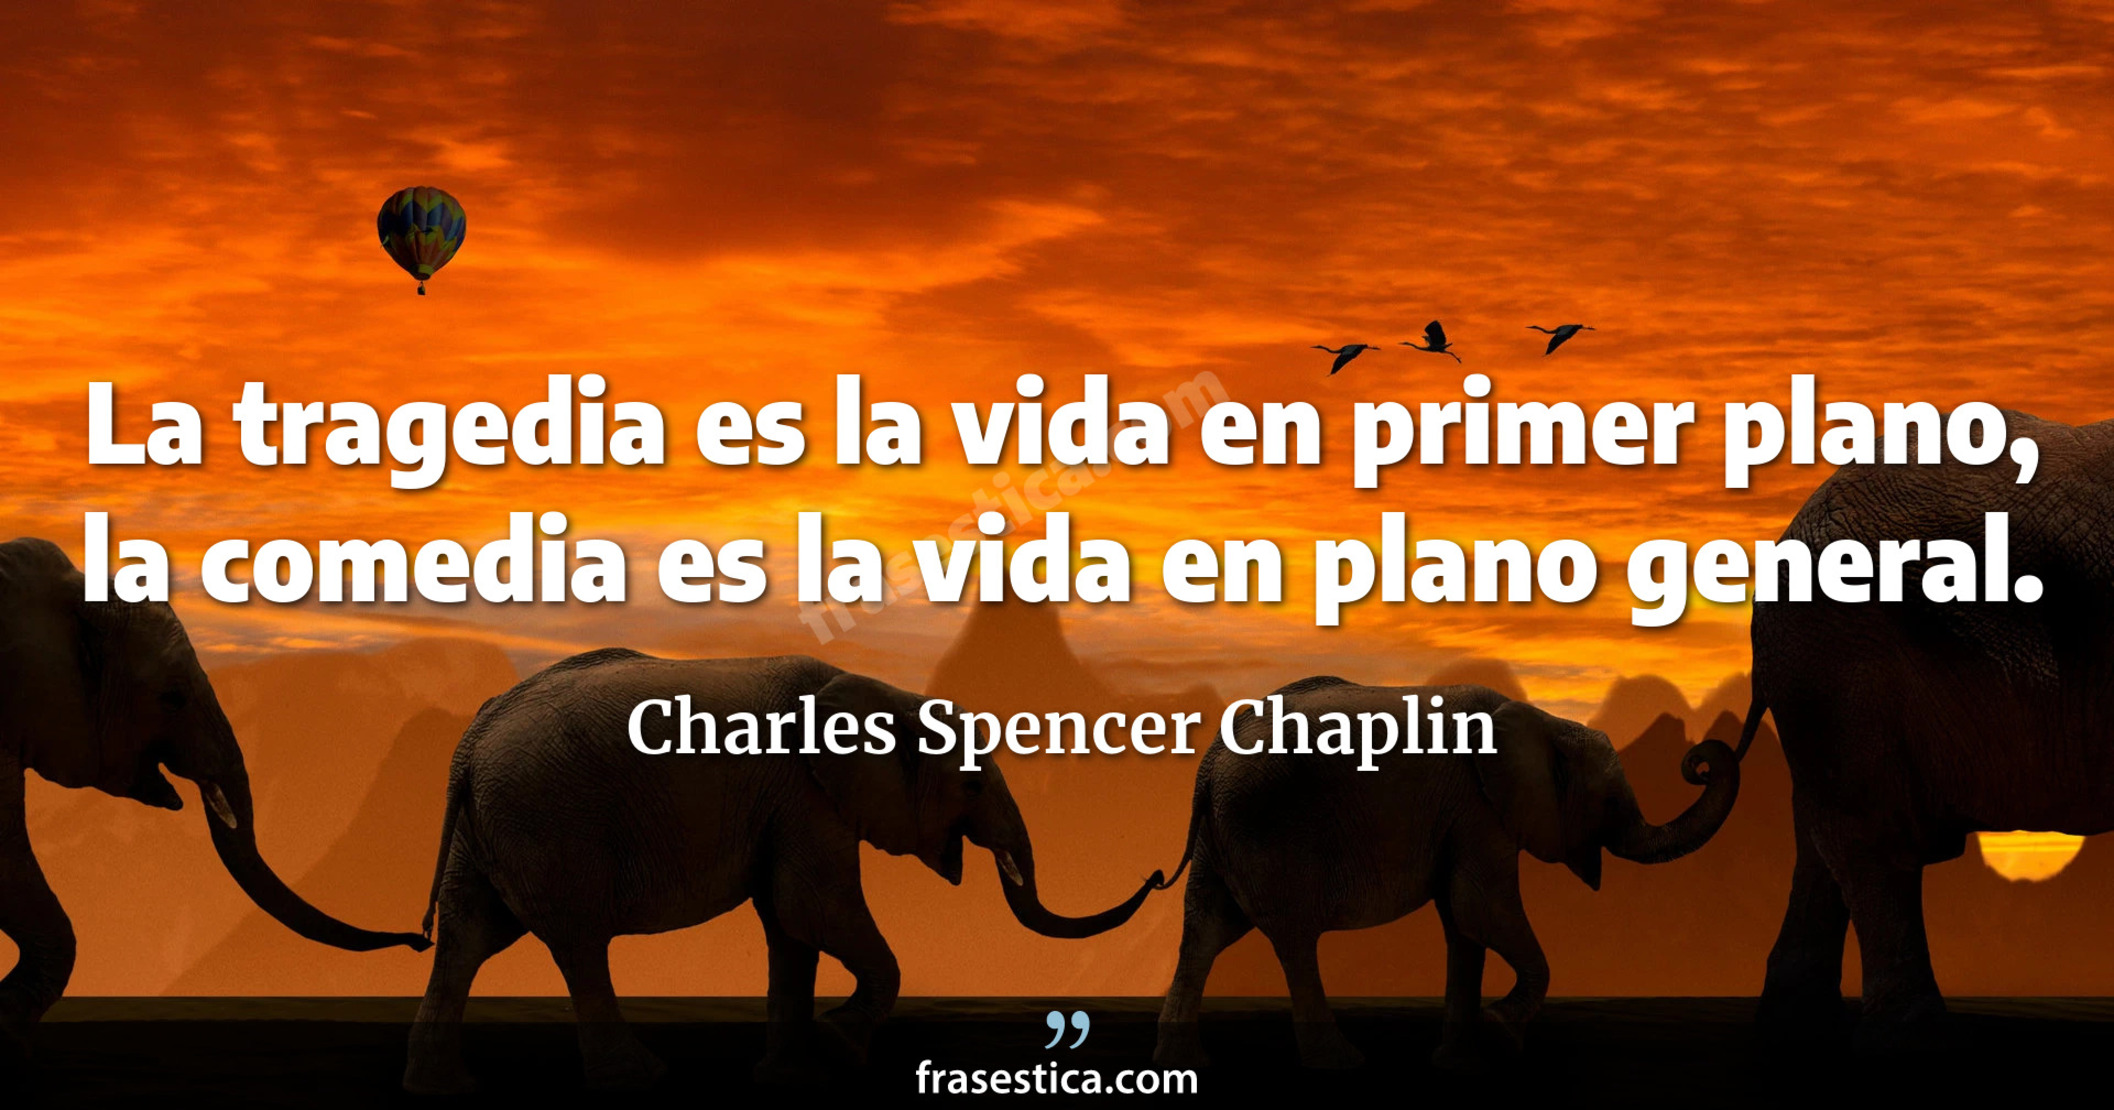 La tragedia es la vida en primer plano, la comedia es la vida en plano general. - Charles Spencer Chaplin